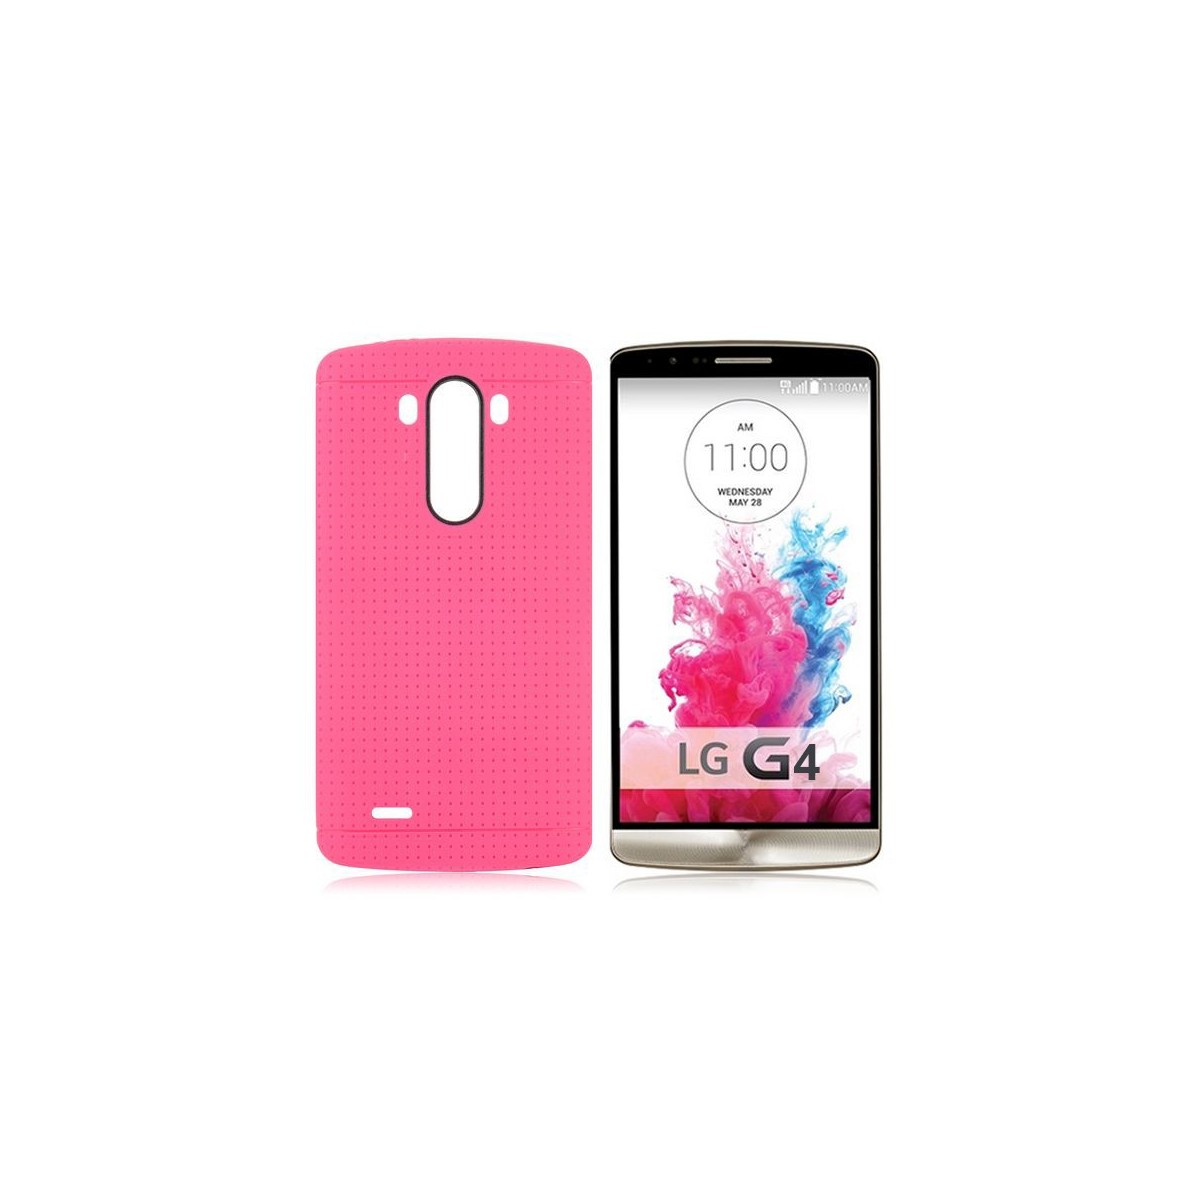 Crazy Kase - Coque LG G4 en TPU Rose